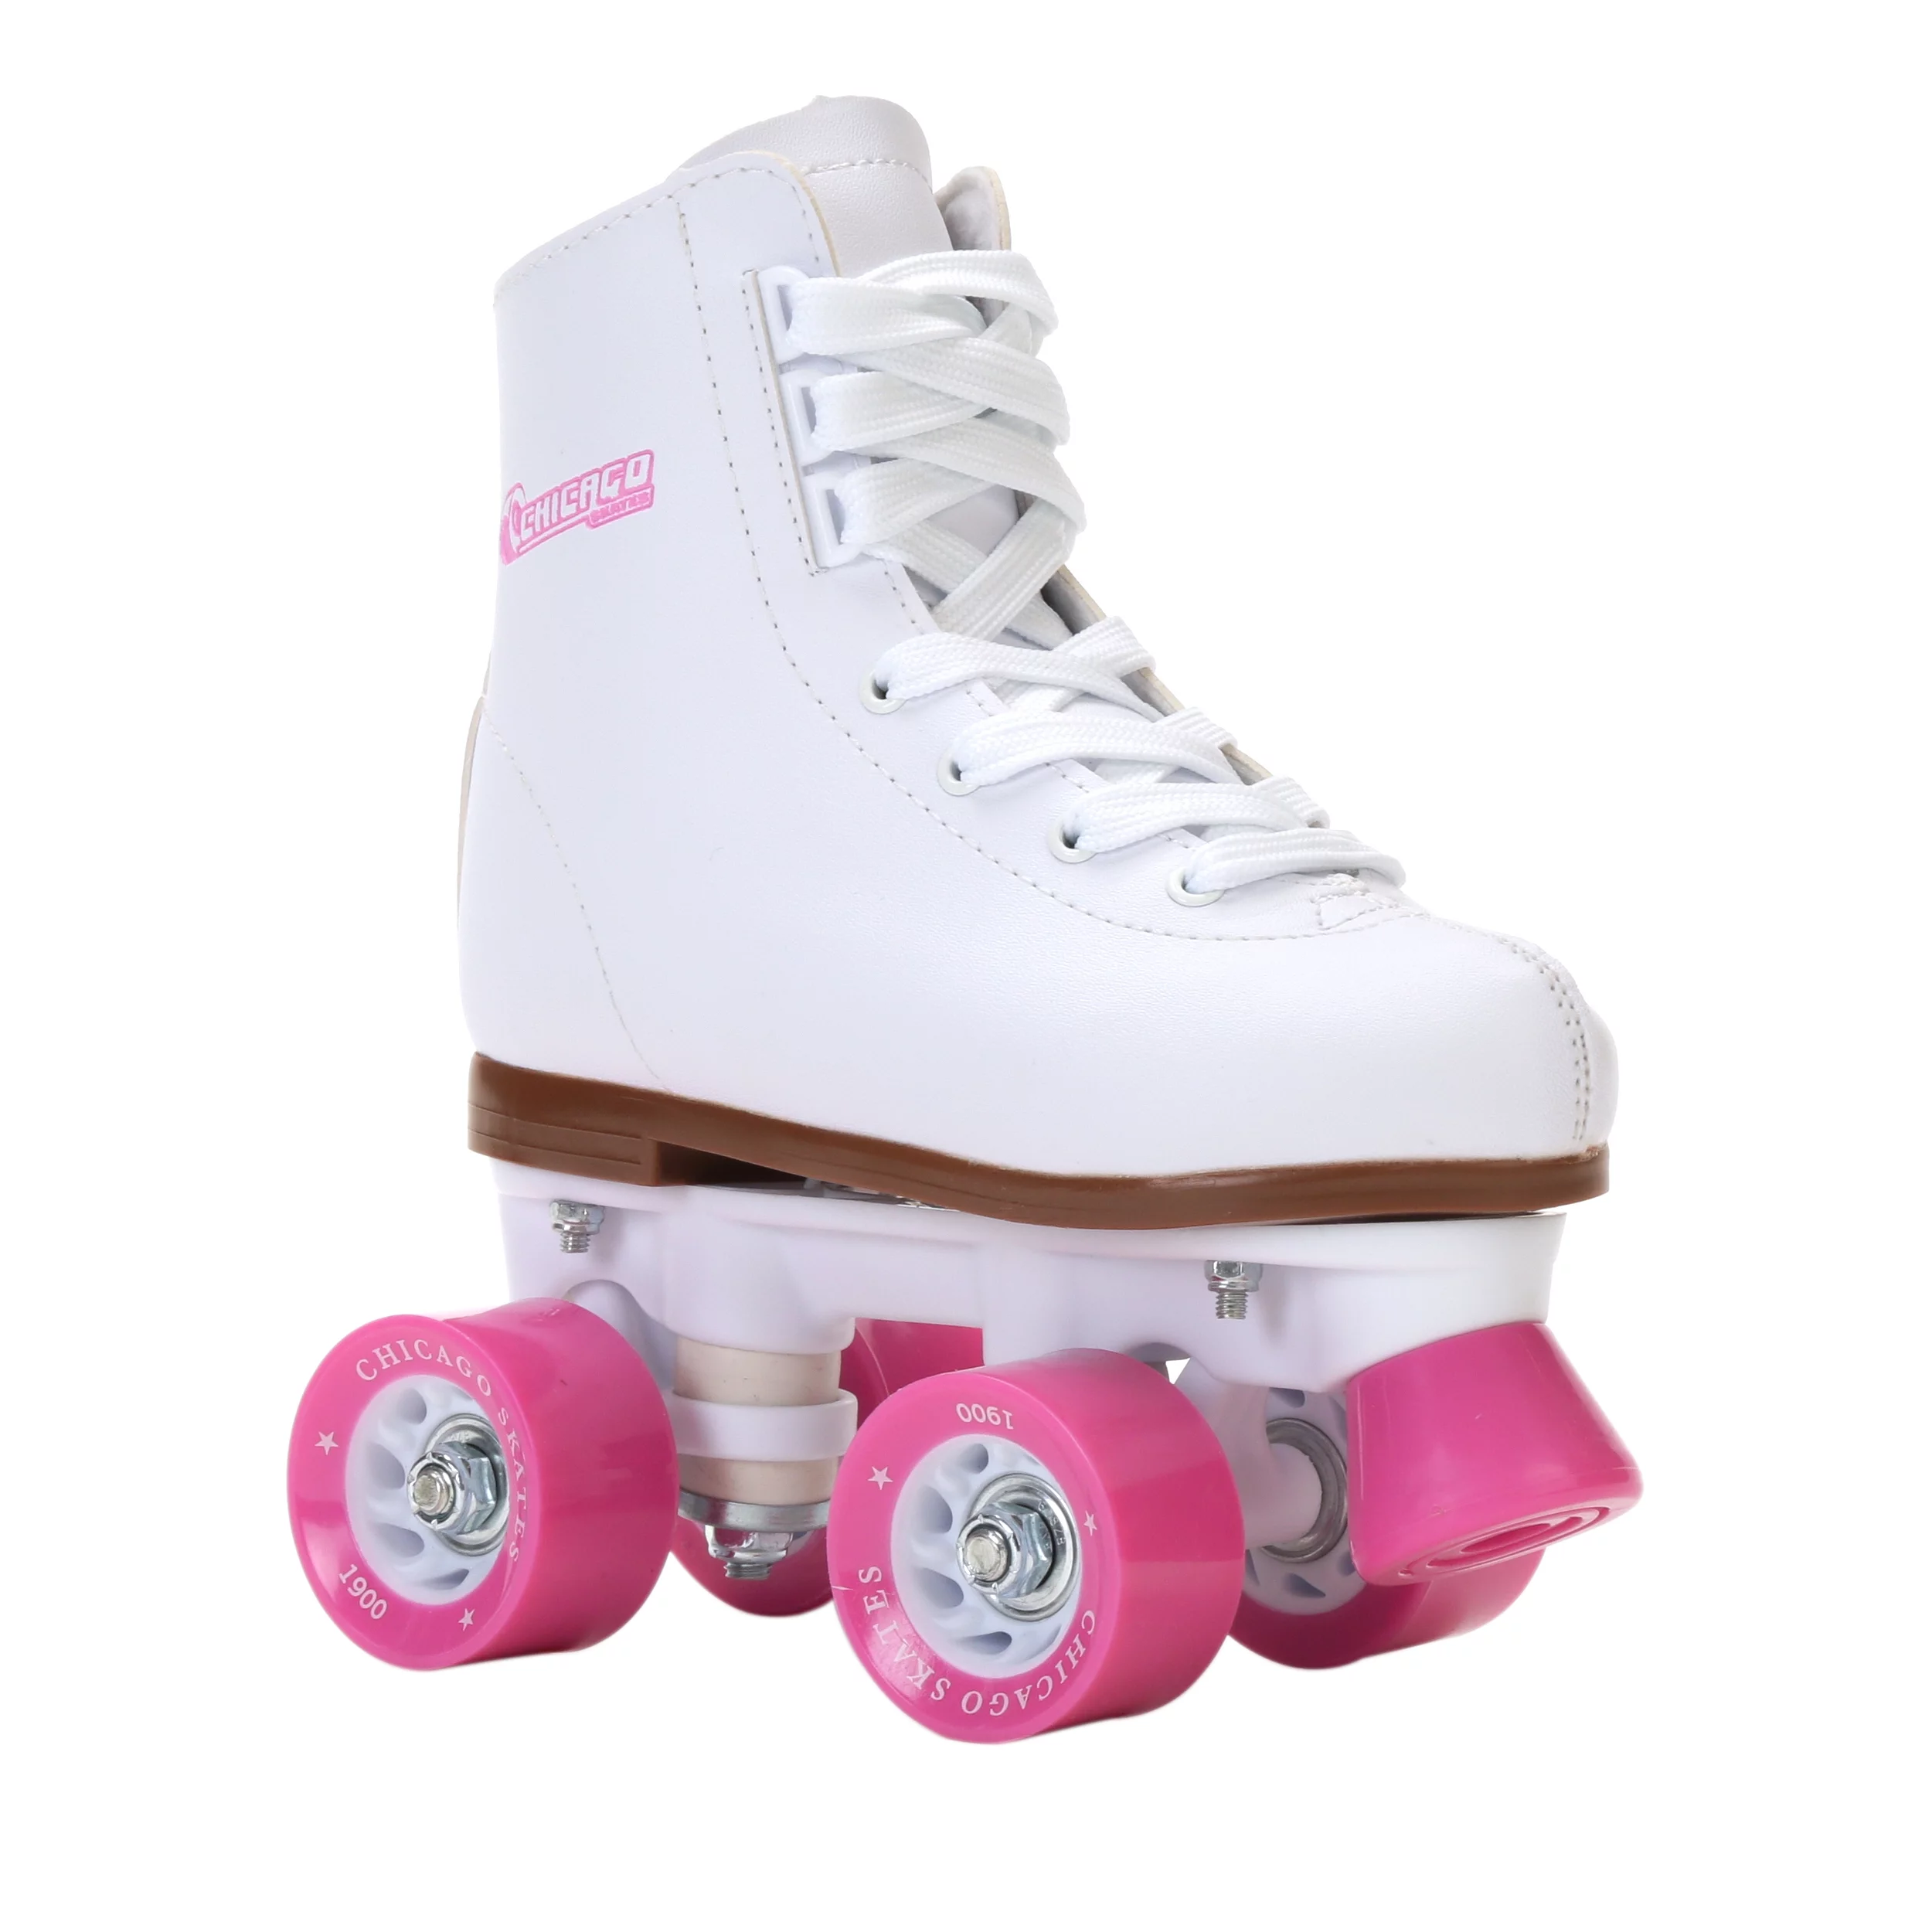 Chicago Girls' Classic Quad Roller Skates White Junior Rink Skates, Size 1